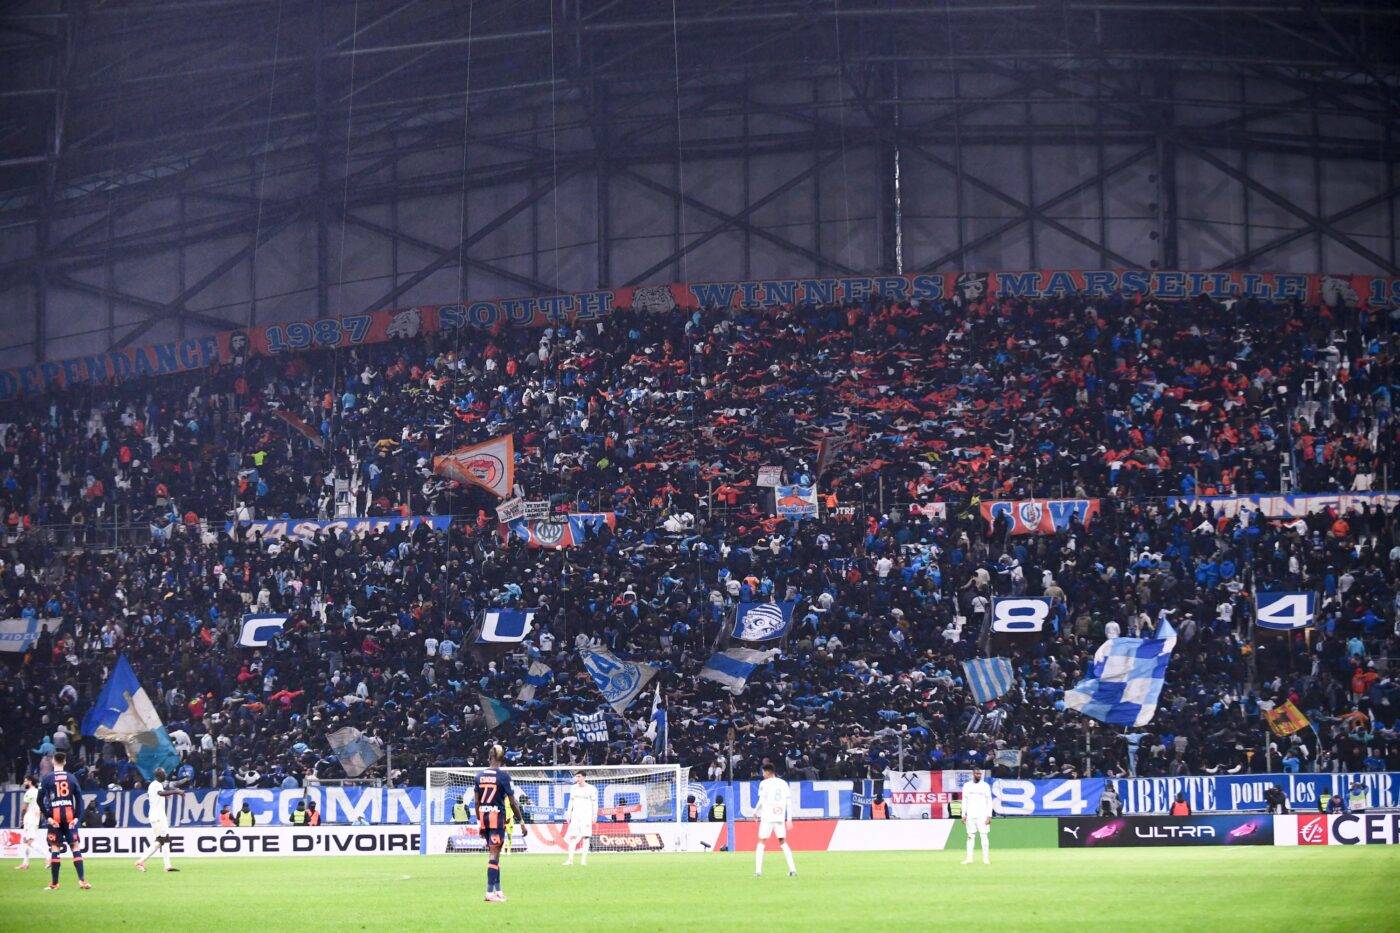 Le tifo provocateur des supporters de Marseille